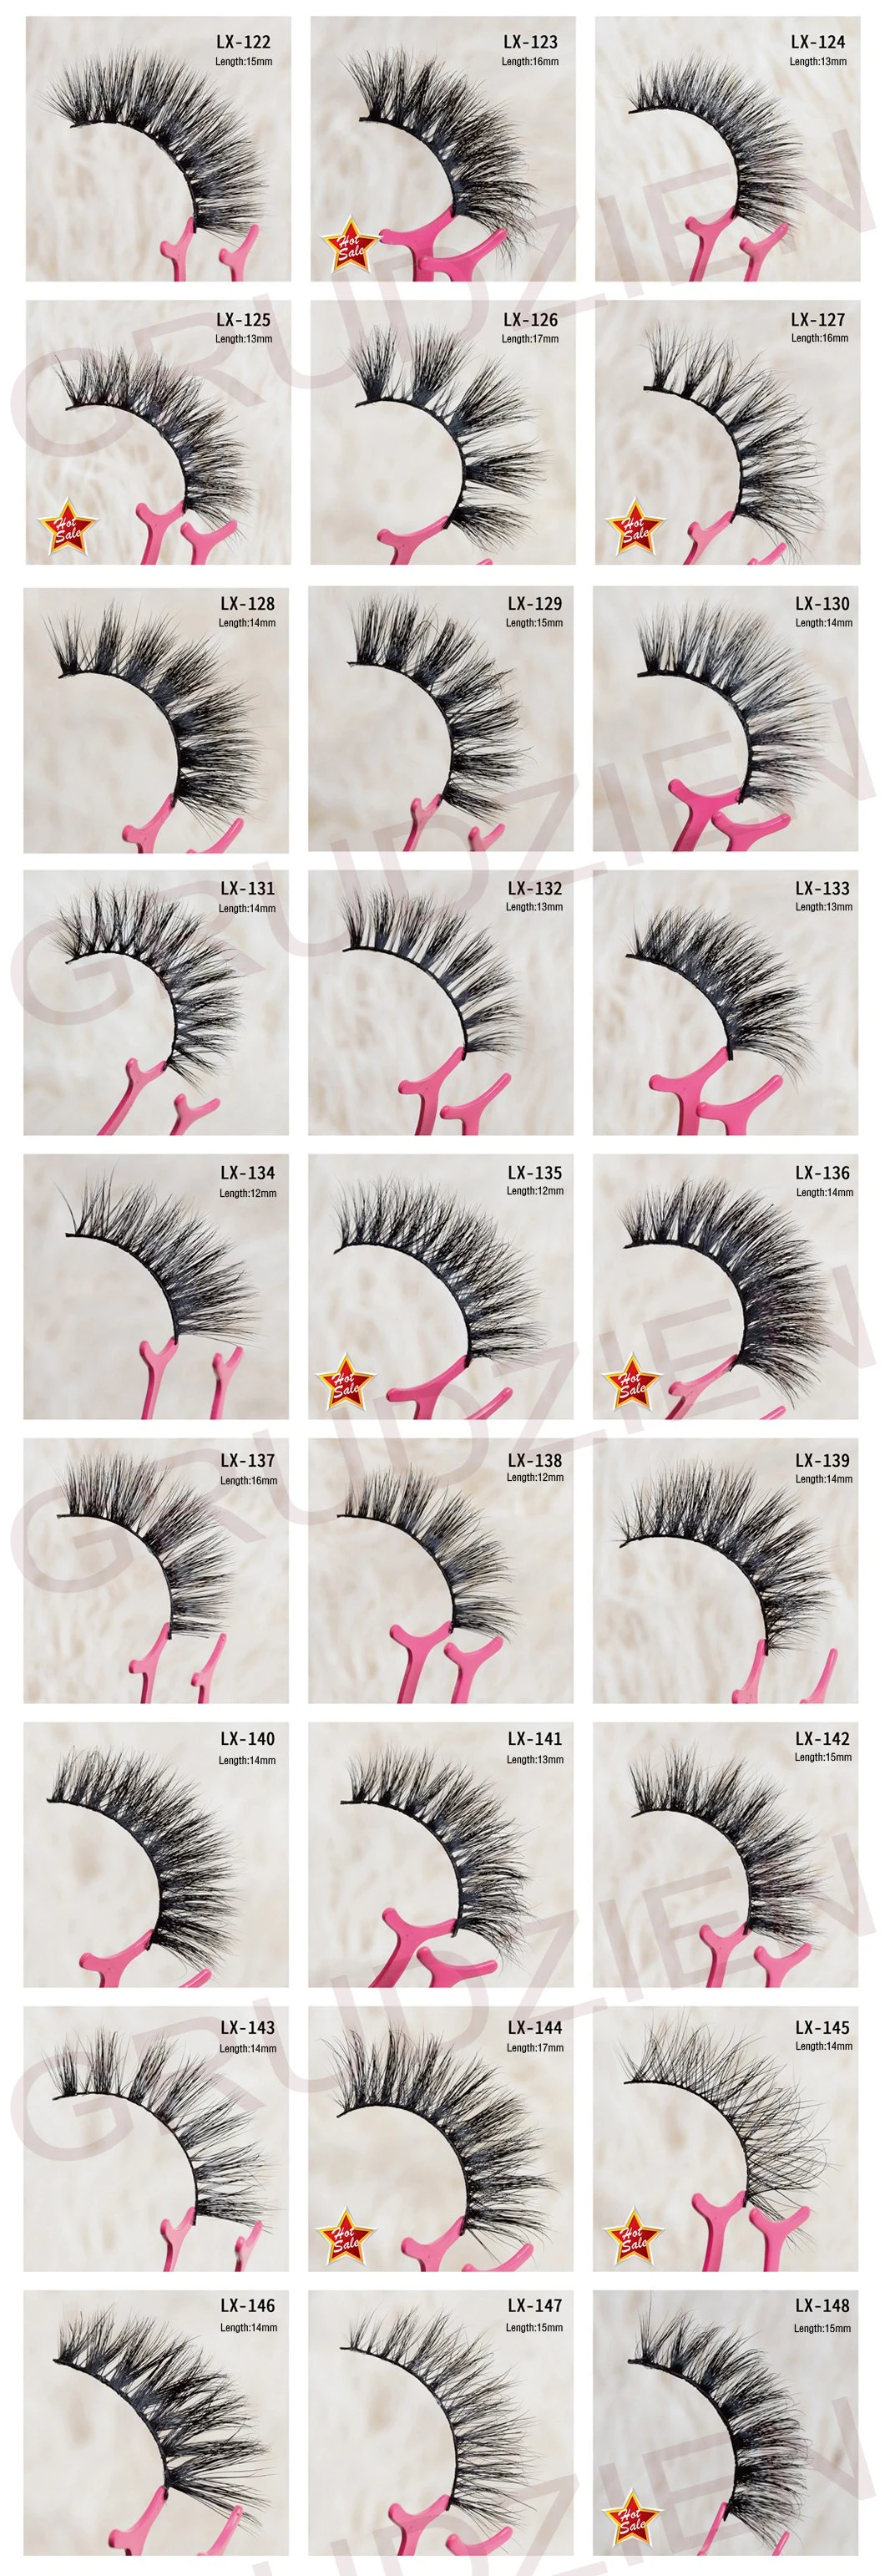 Handmade Private Label Faux Mink Eyelashes Bulks Wispy False 3D Mink Eyelashes Wholesale